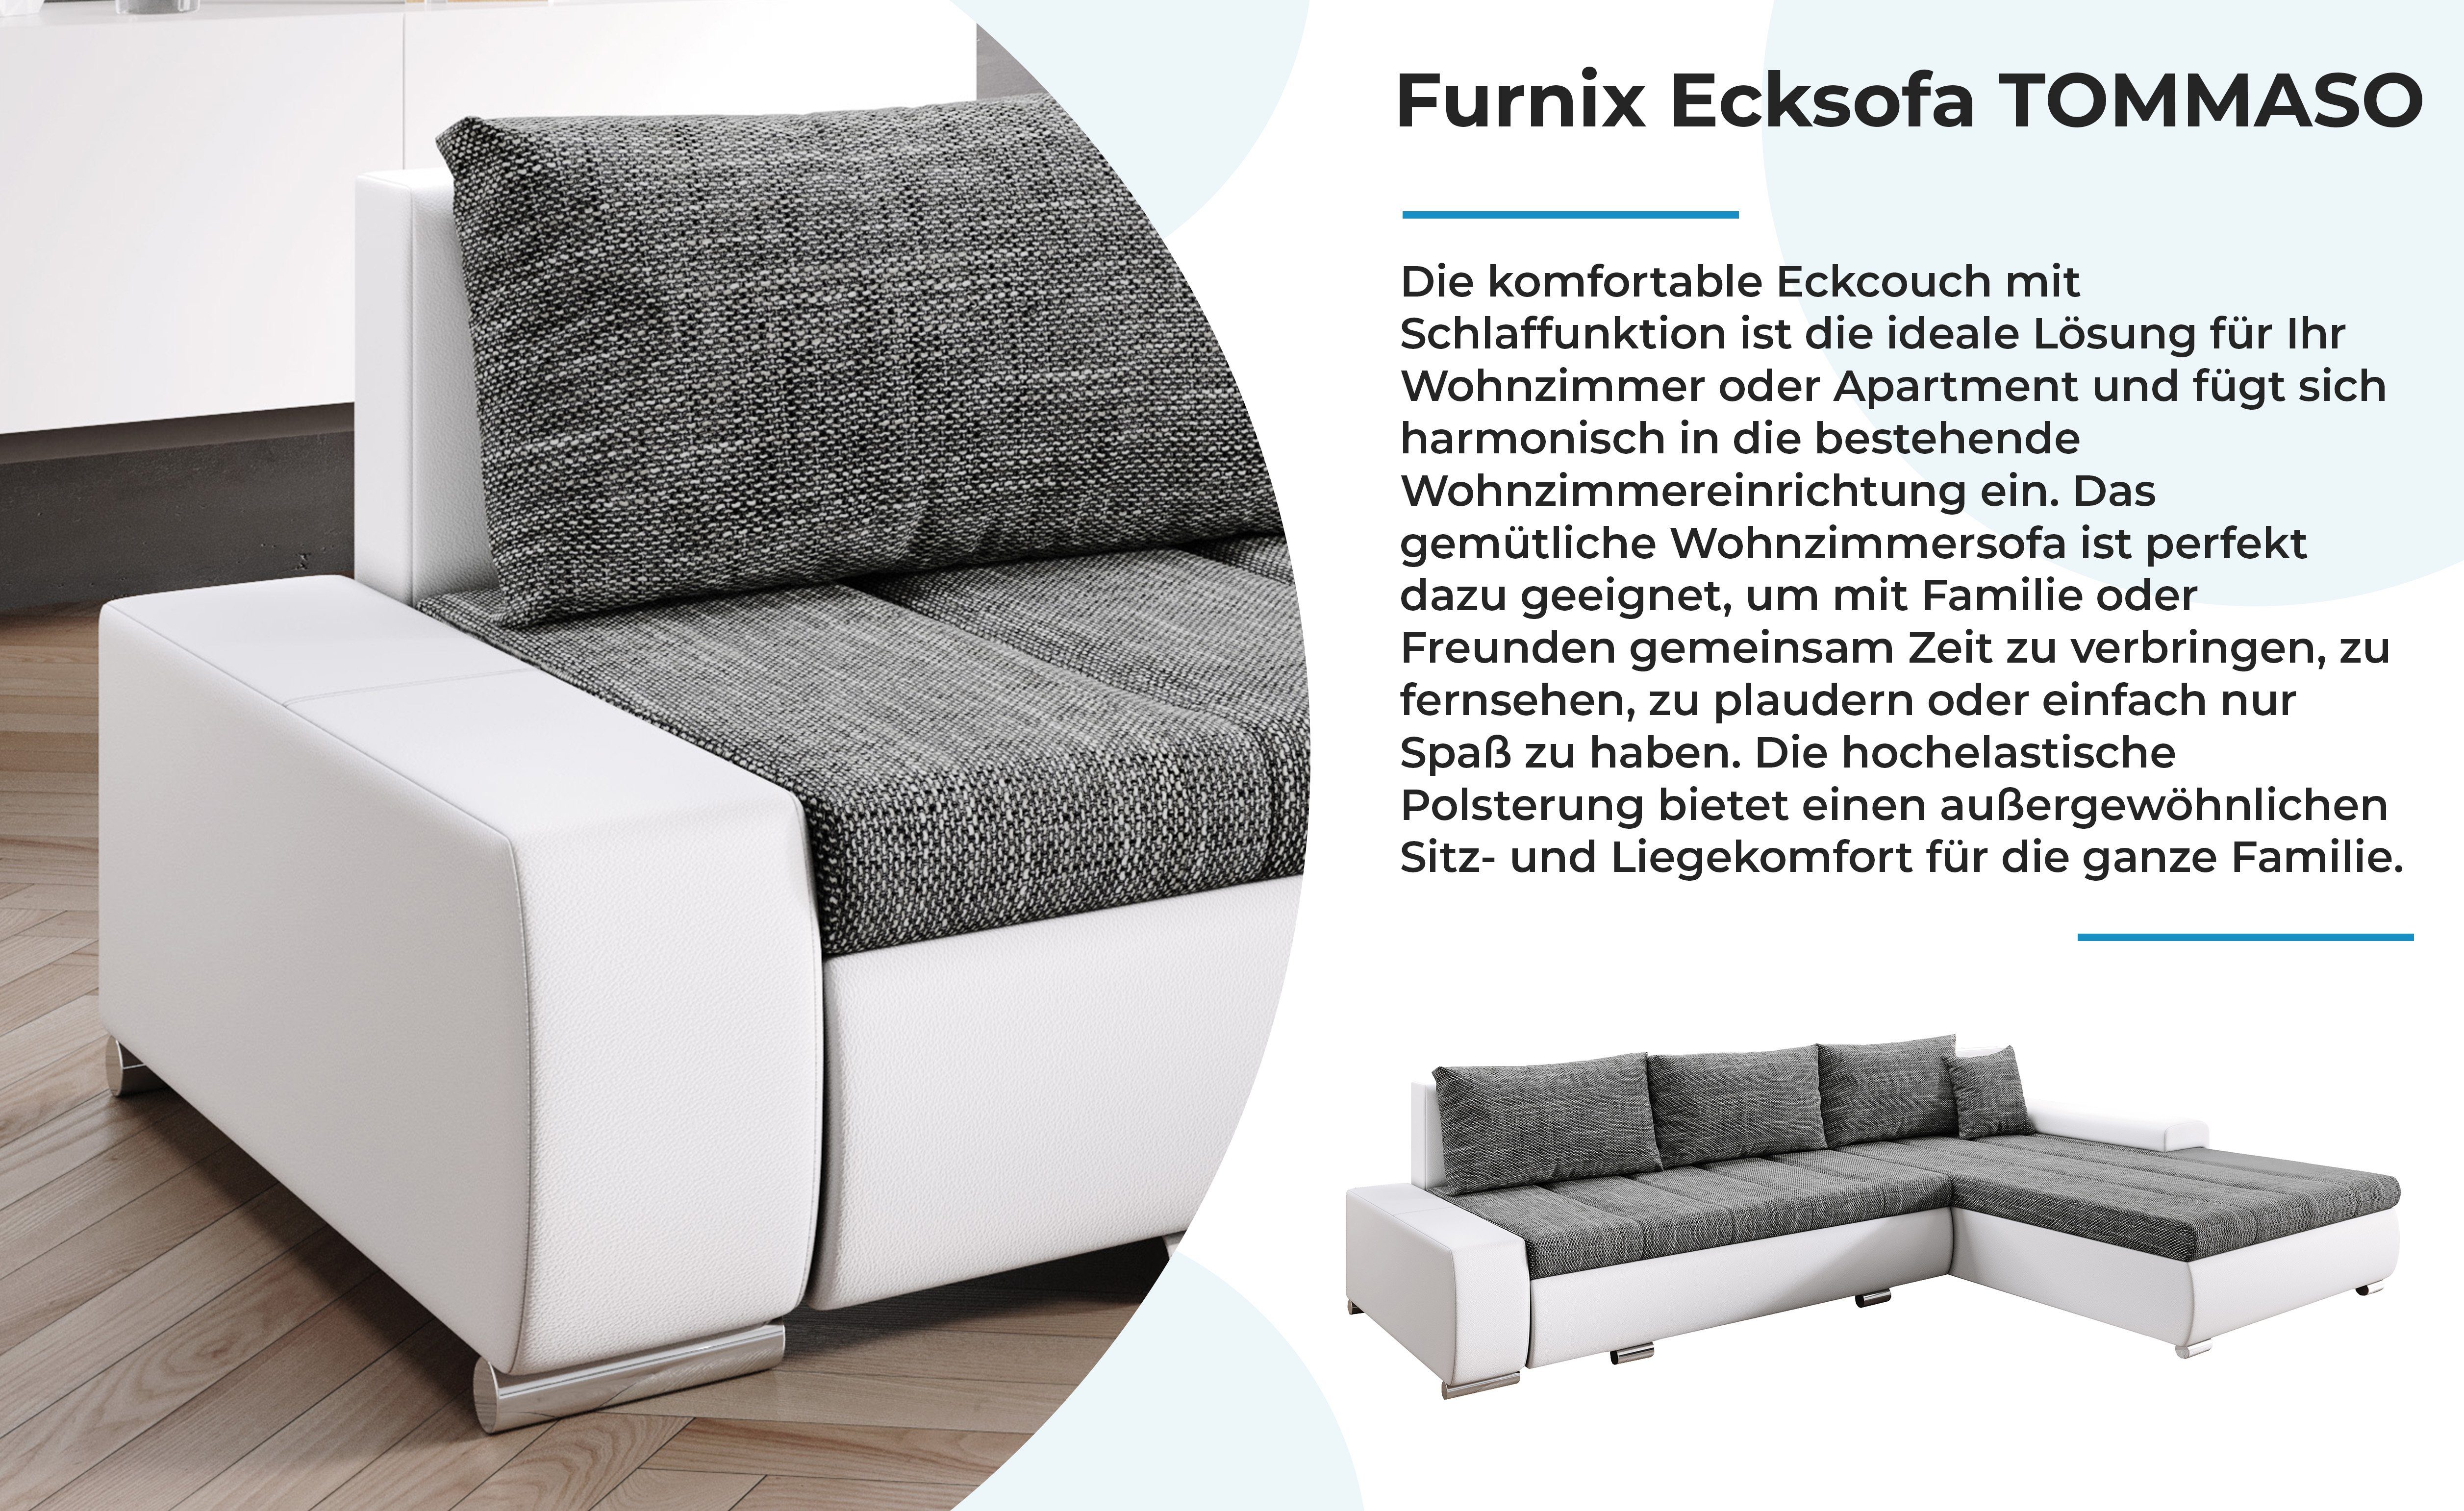 Ecksofa cm, Sofa mit Braun/Weiß Schlaffunktion Kissen T210 Bettkasten EU MA120 BE01 x Furnix Made TOMMASO hochwertig, x Stoff/Kunstleder in B297 H85 Couch,